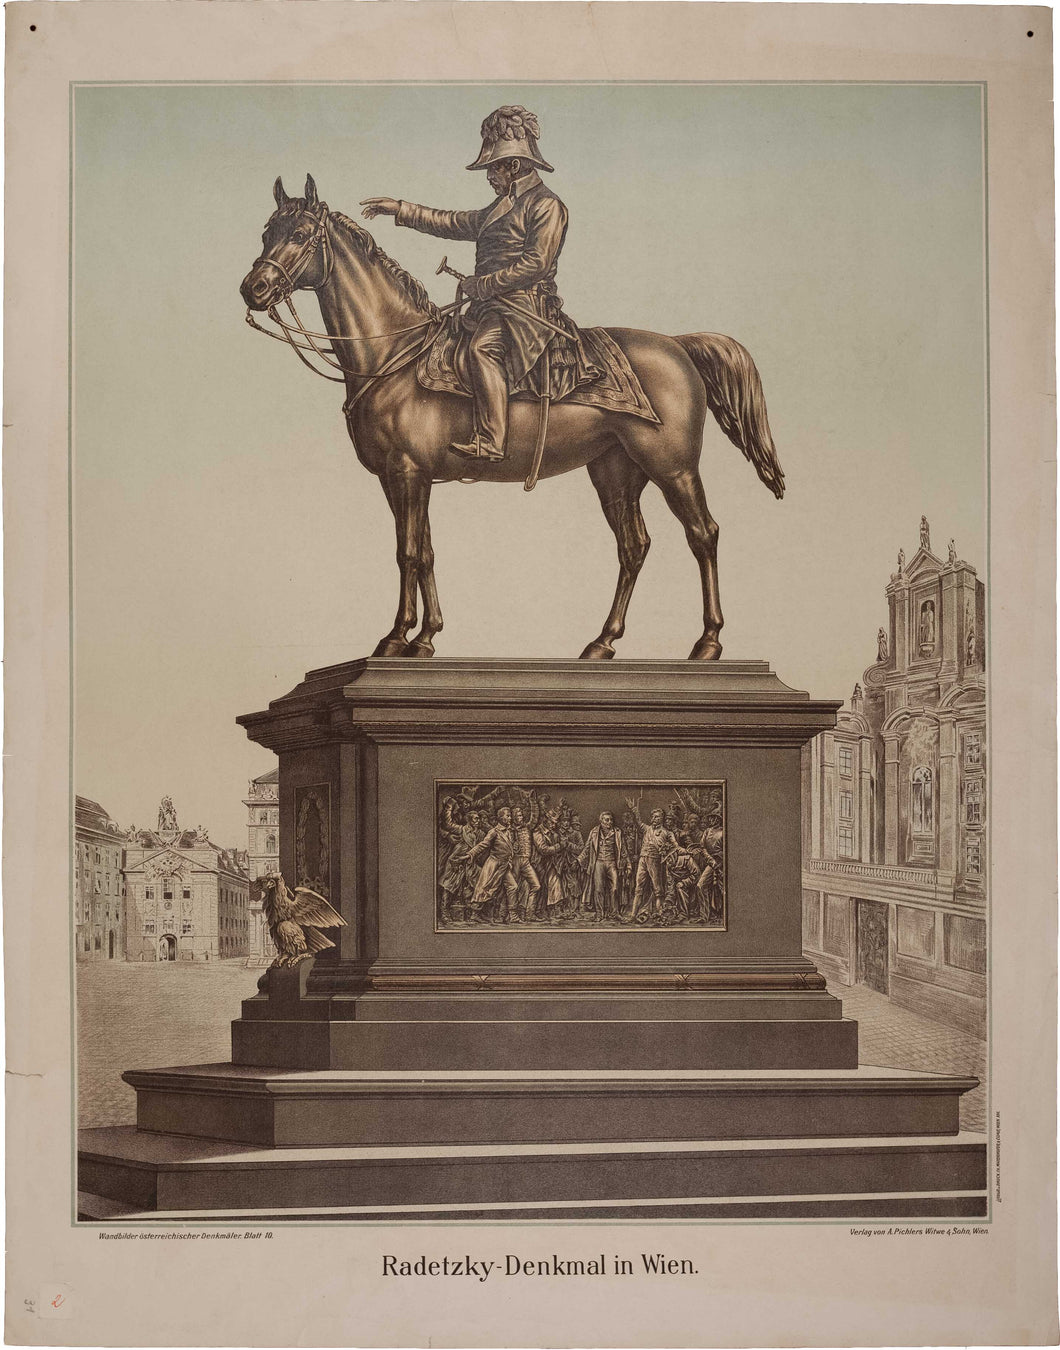 Radetzky-Denkmal in Wien